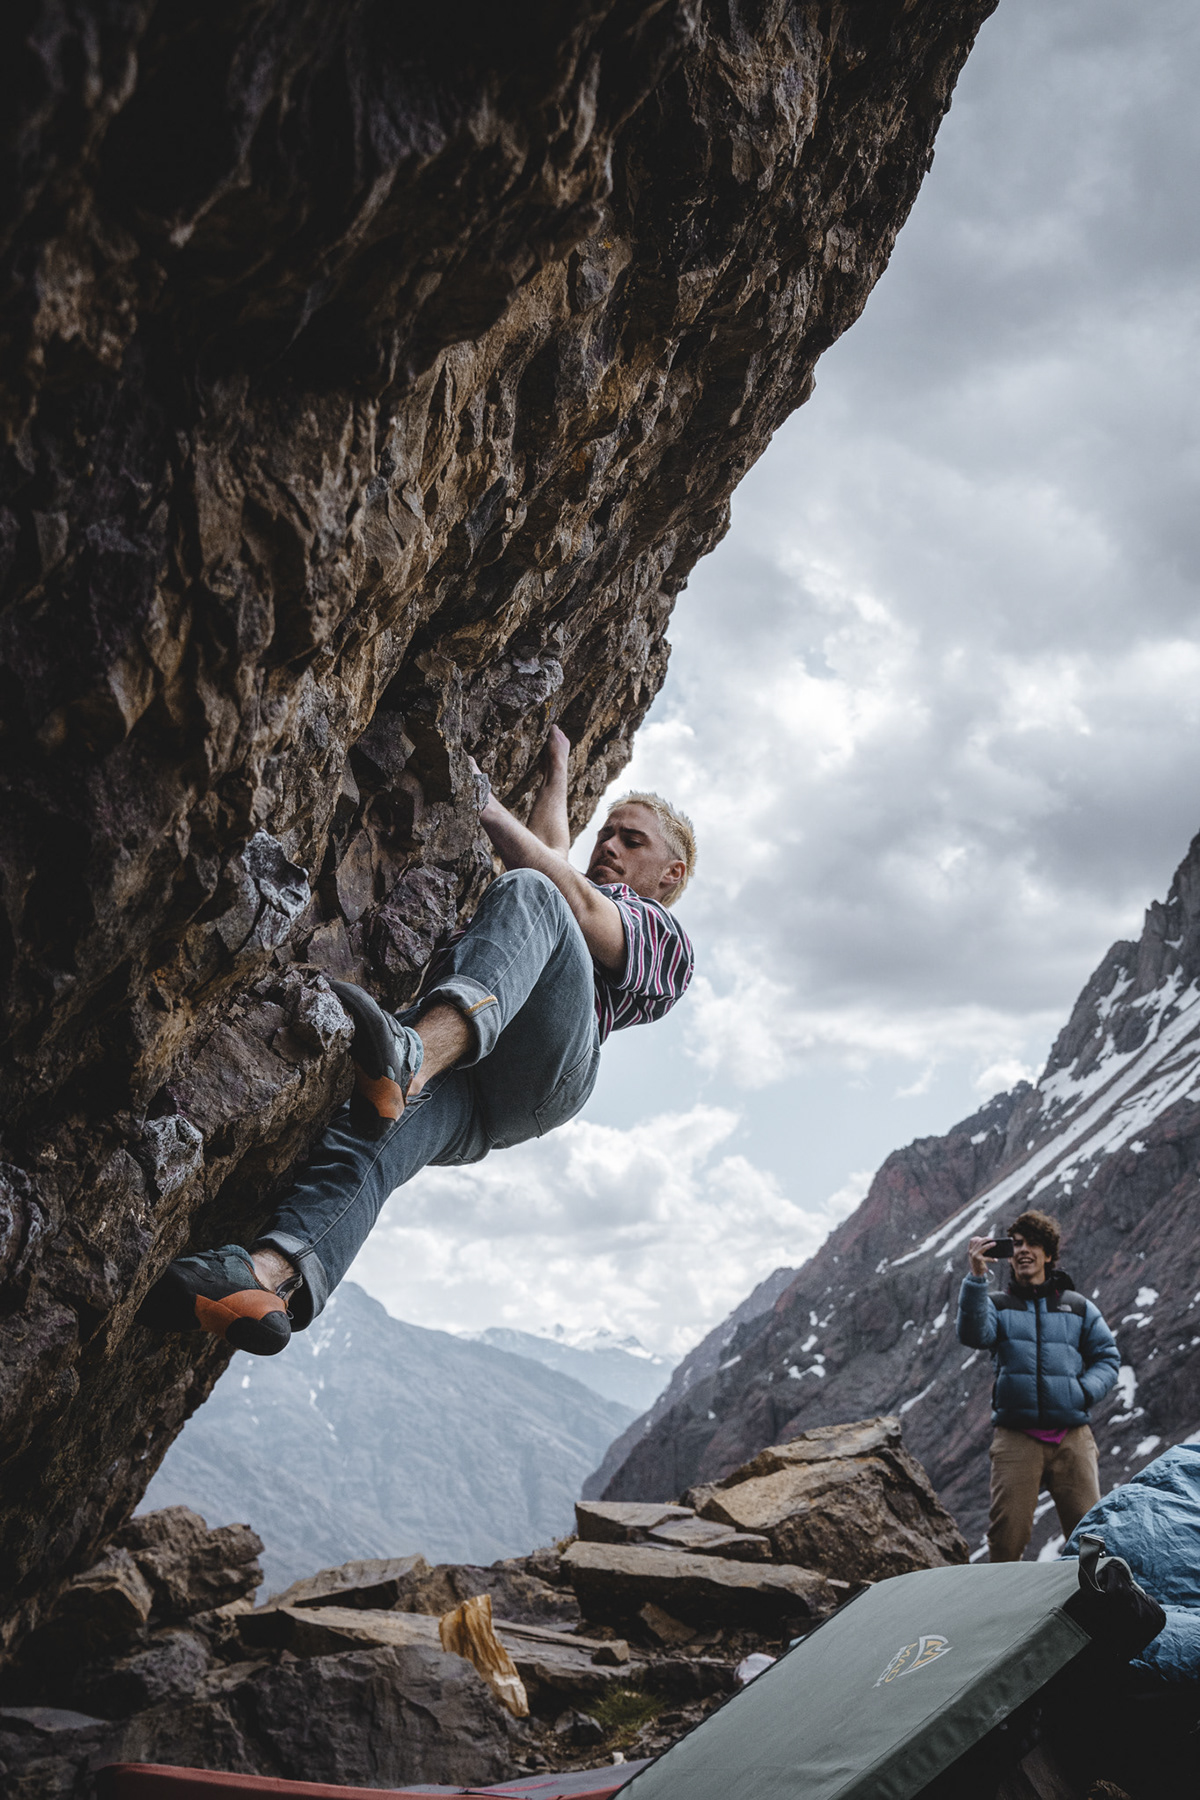 montañas escalada mountains chile sports climbing bouldering Boulder lanscape rockclimbing